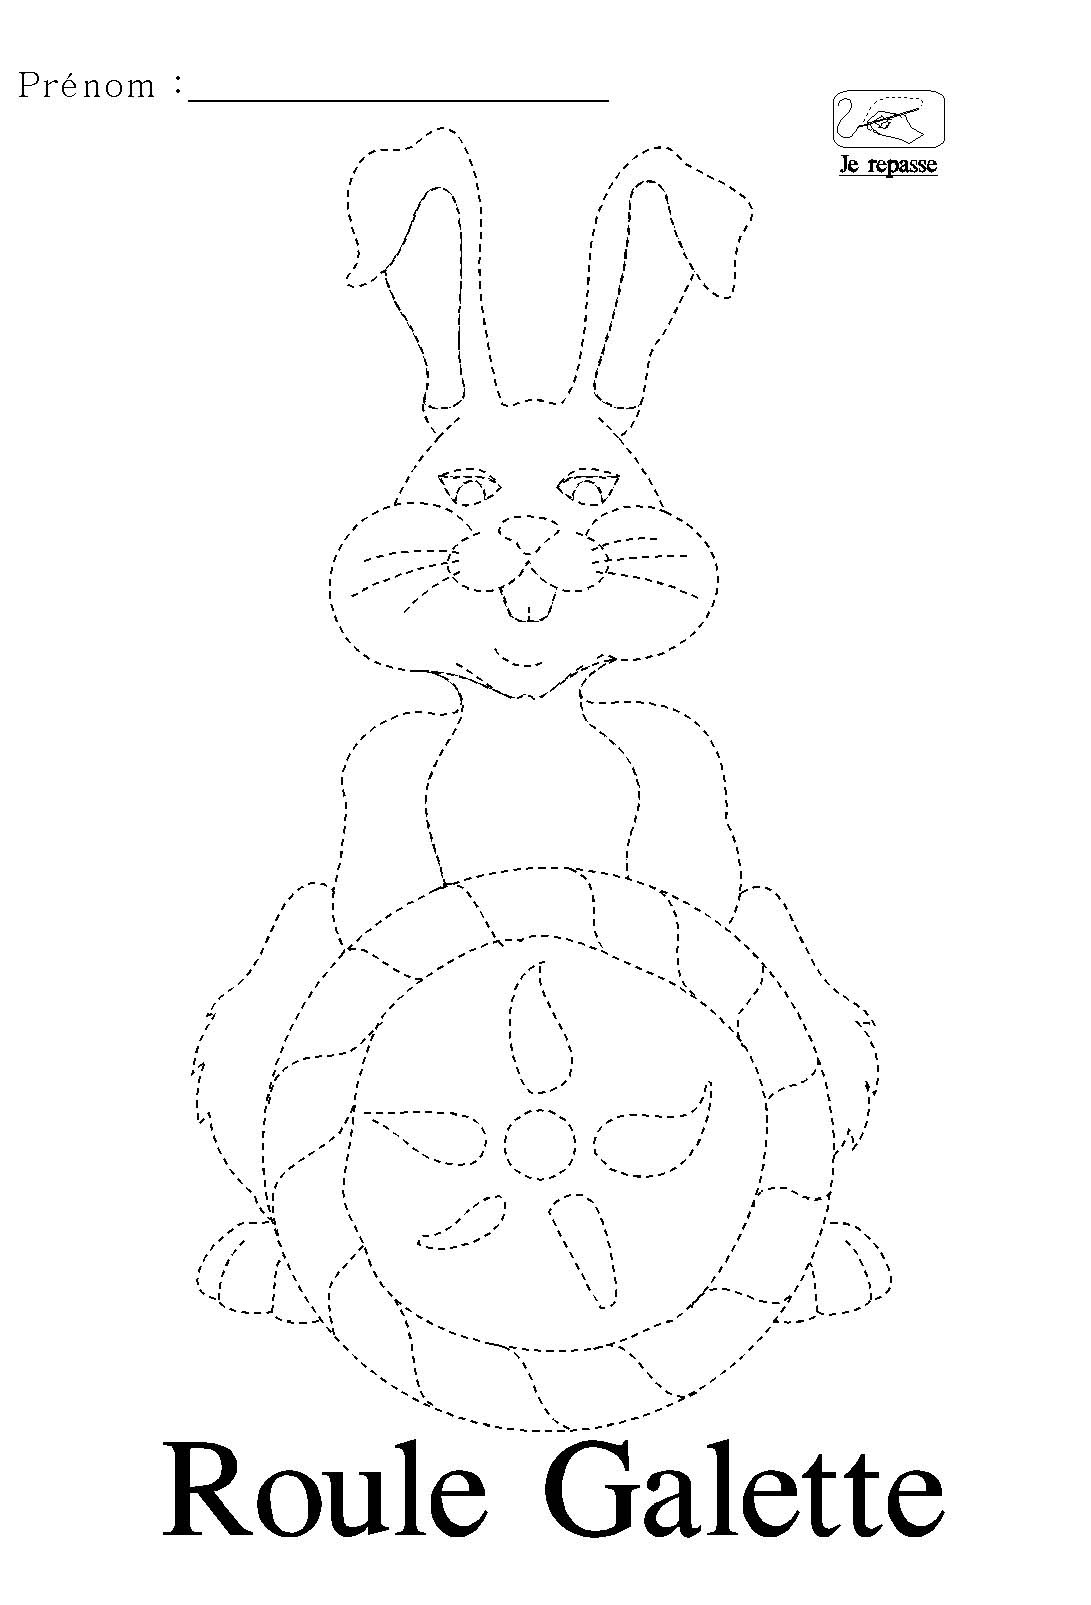 Repasser les pointills qui dessinent le lapin de Roule Galette